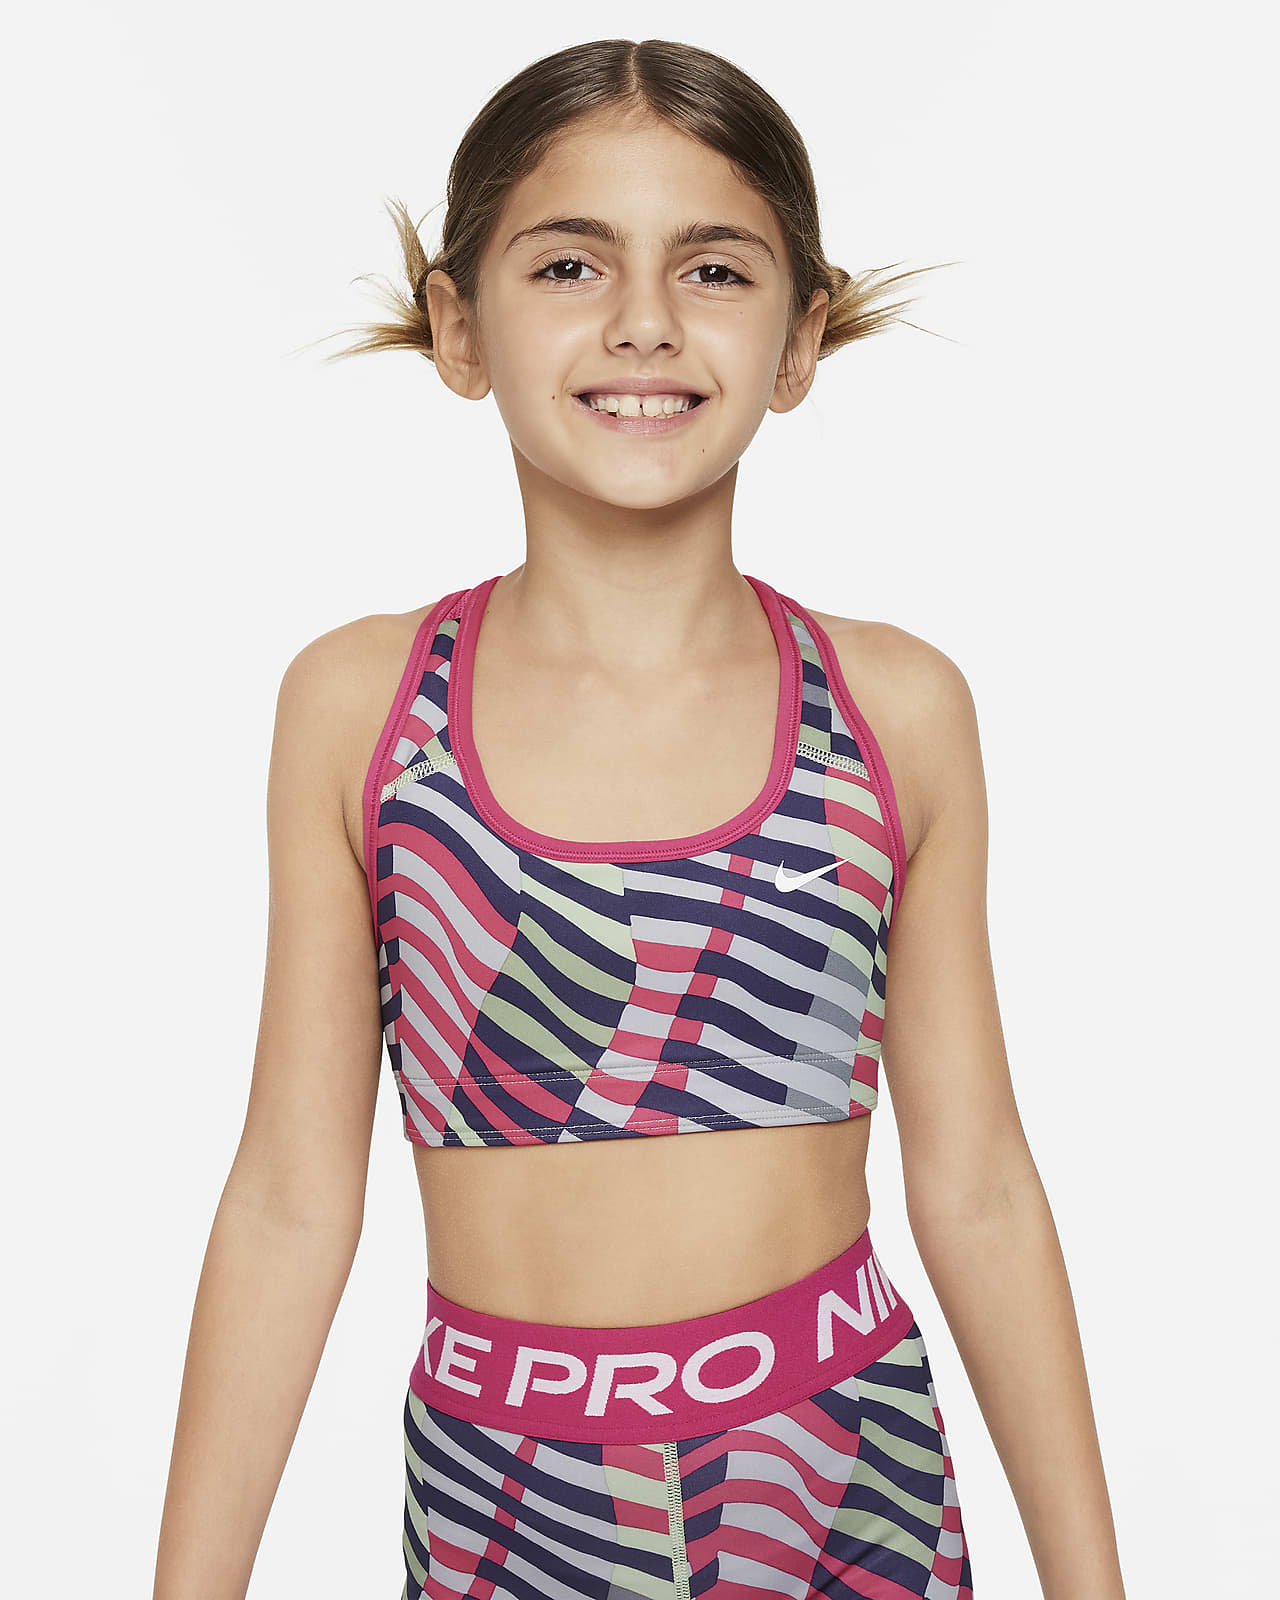 Αθλητικός στηθόδεσμος διπλής όψης Nike Swoosh για μεγάλα κορίτσια